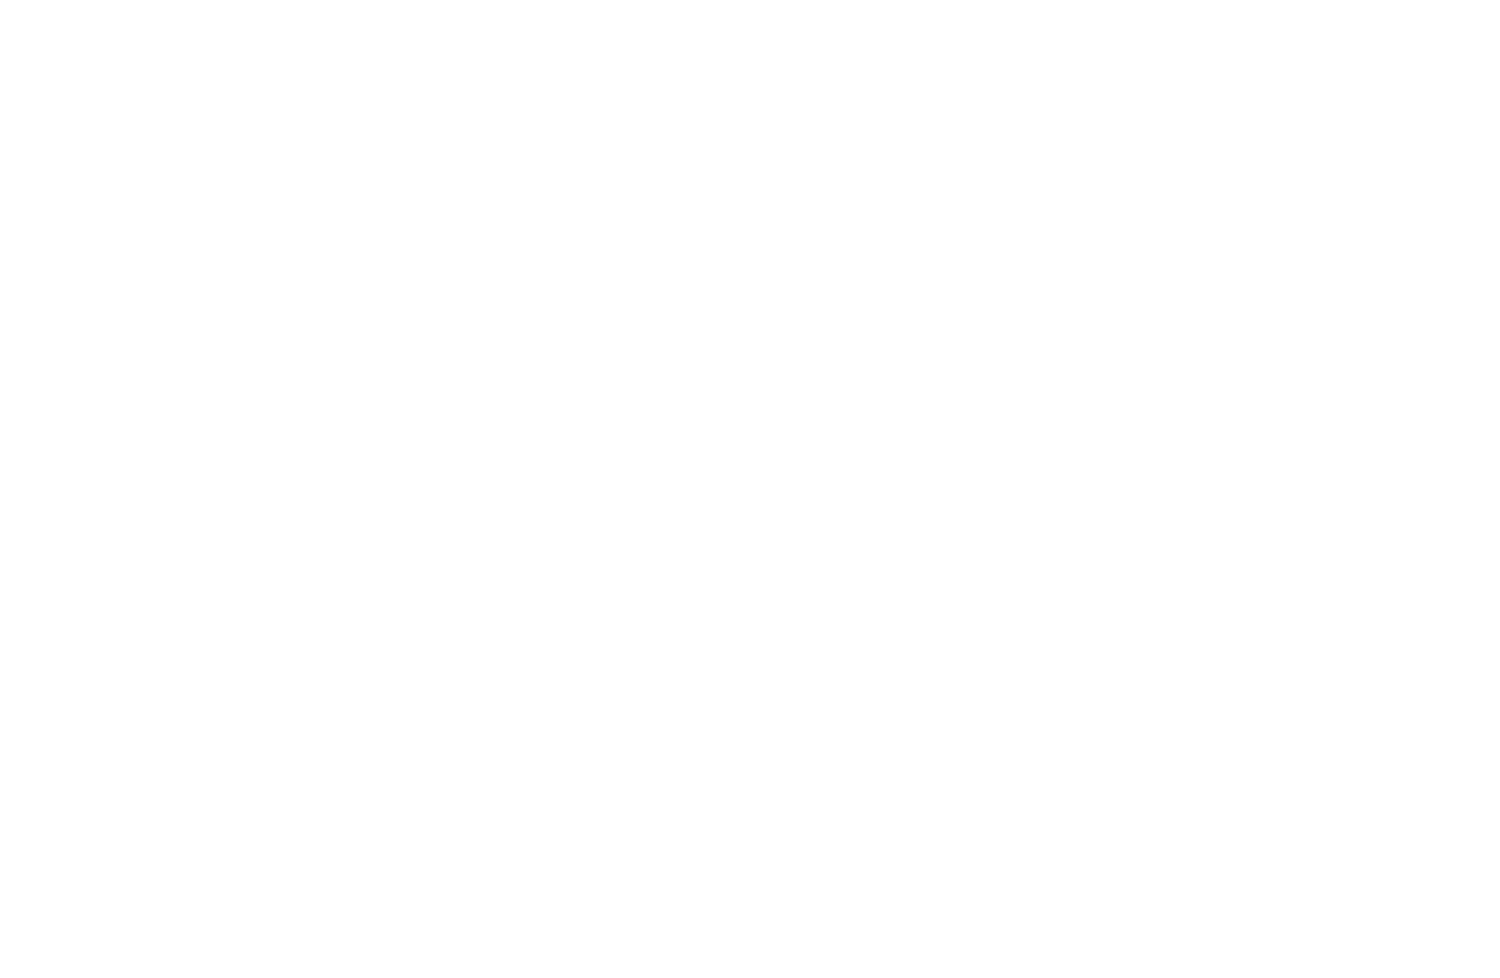 bethmckee.com